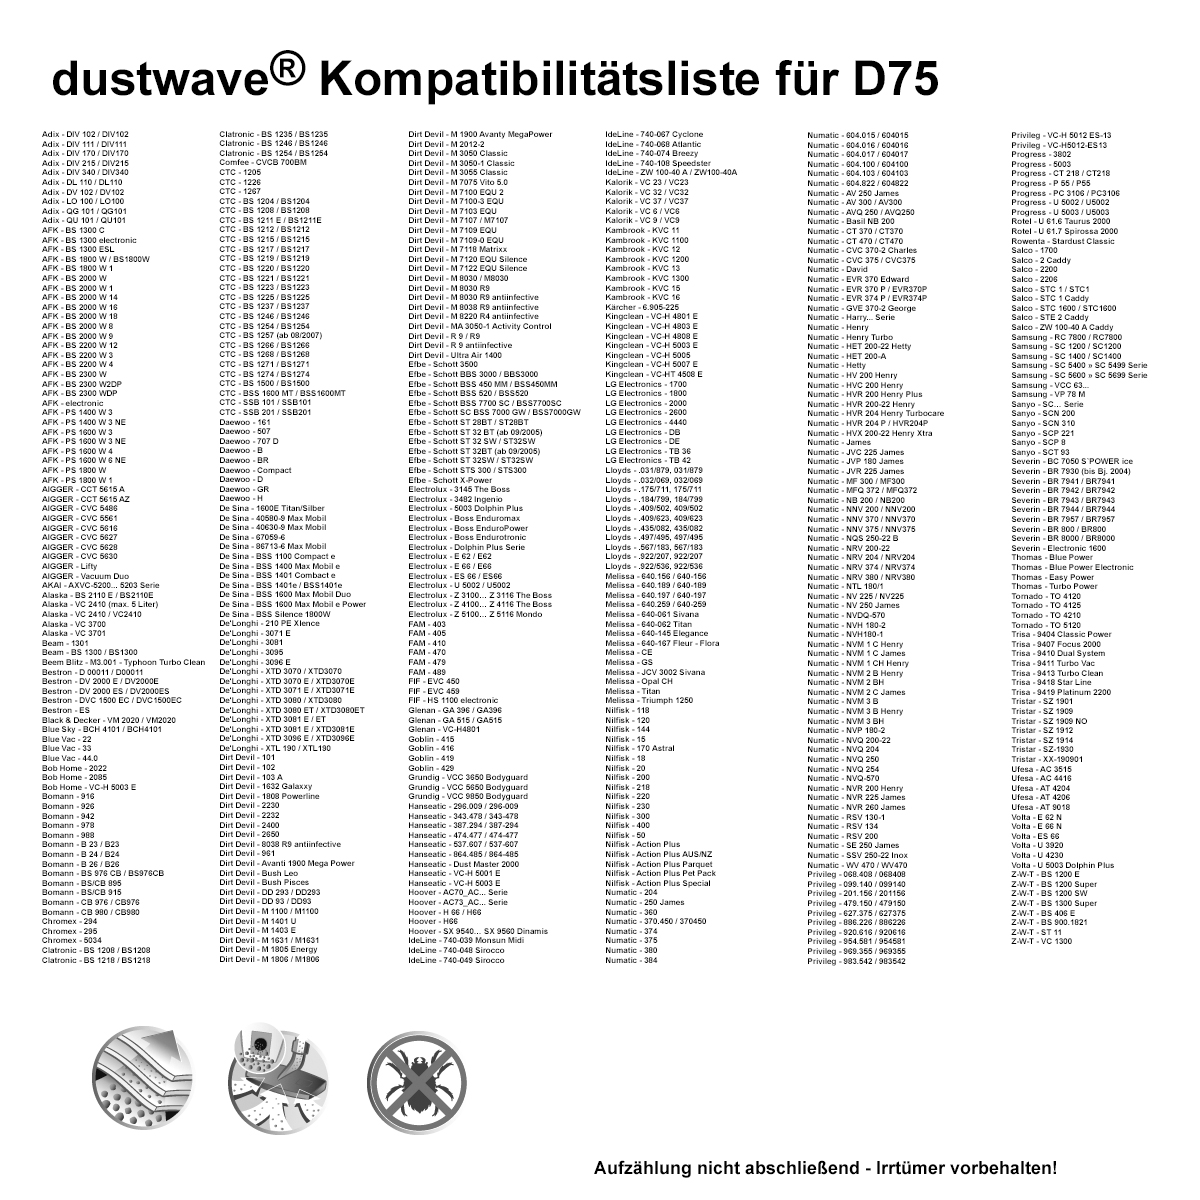 Dustwave® 1 Staubsaugerbeutel für Base BA 4091 - hocheffizient mit Hygieneverschluss - Made in Germany